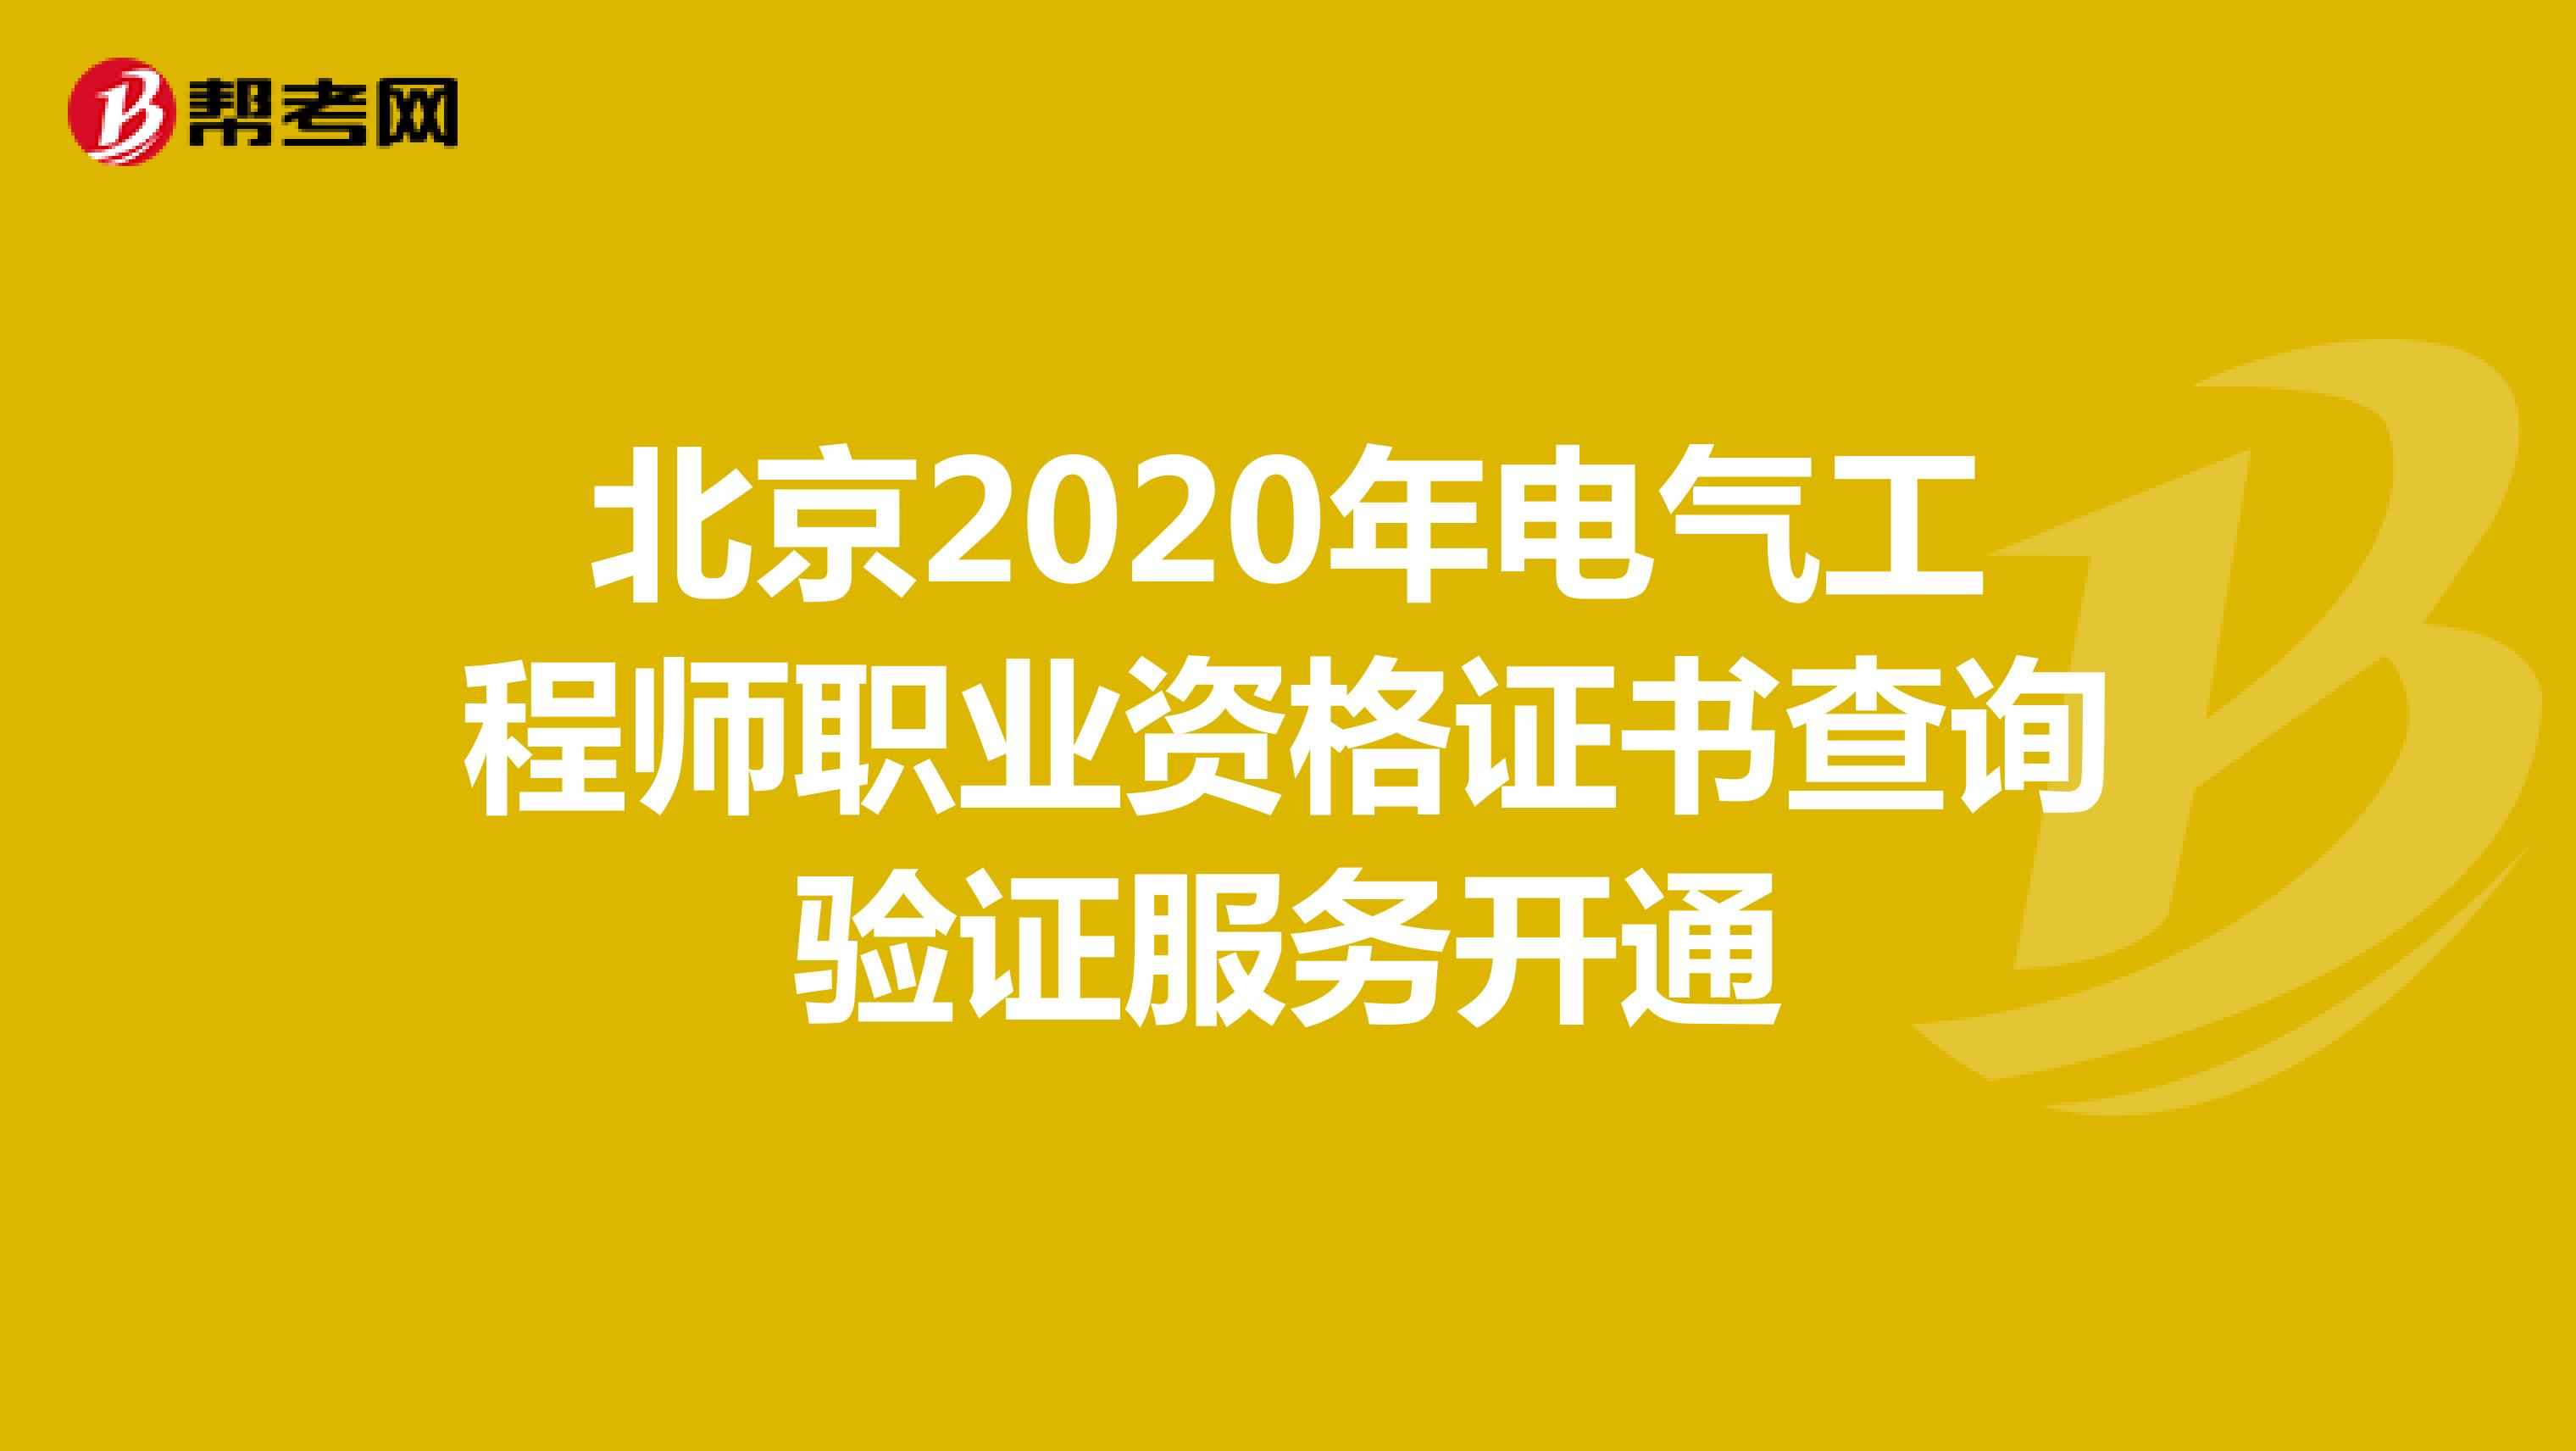 北京2020年电气工程师职业资格证书查询验证服务开通